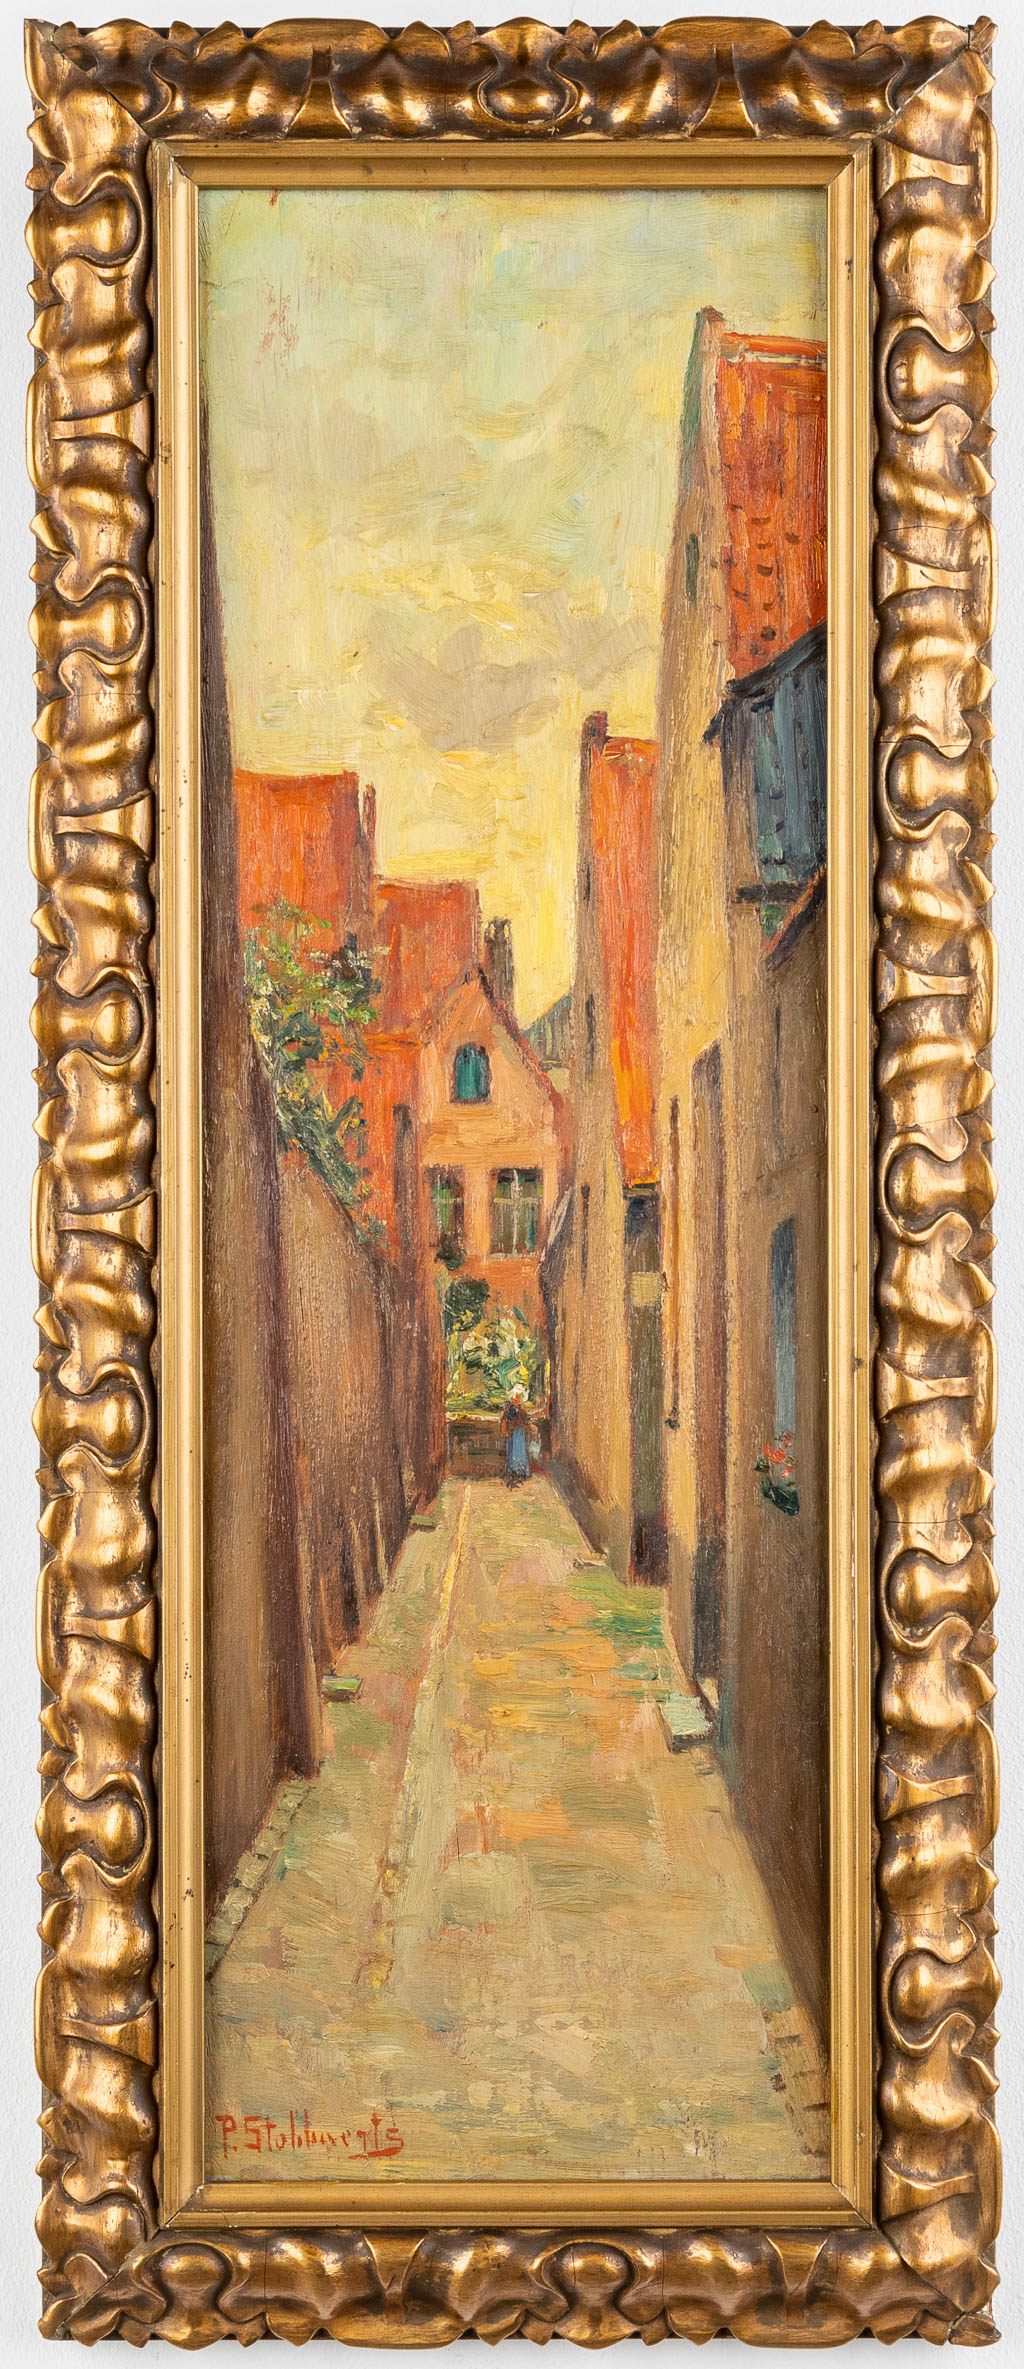 Pieter STOBBAERTS (1865-1948) 'Vette Vispoort, Brugge' oil on board. (W:18 x H:56 cm)